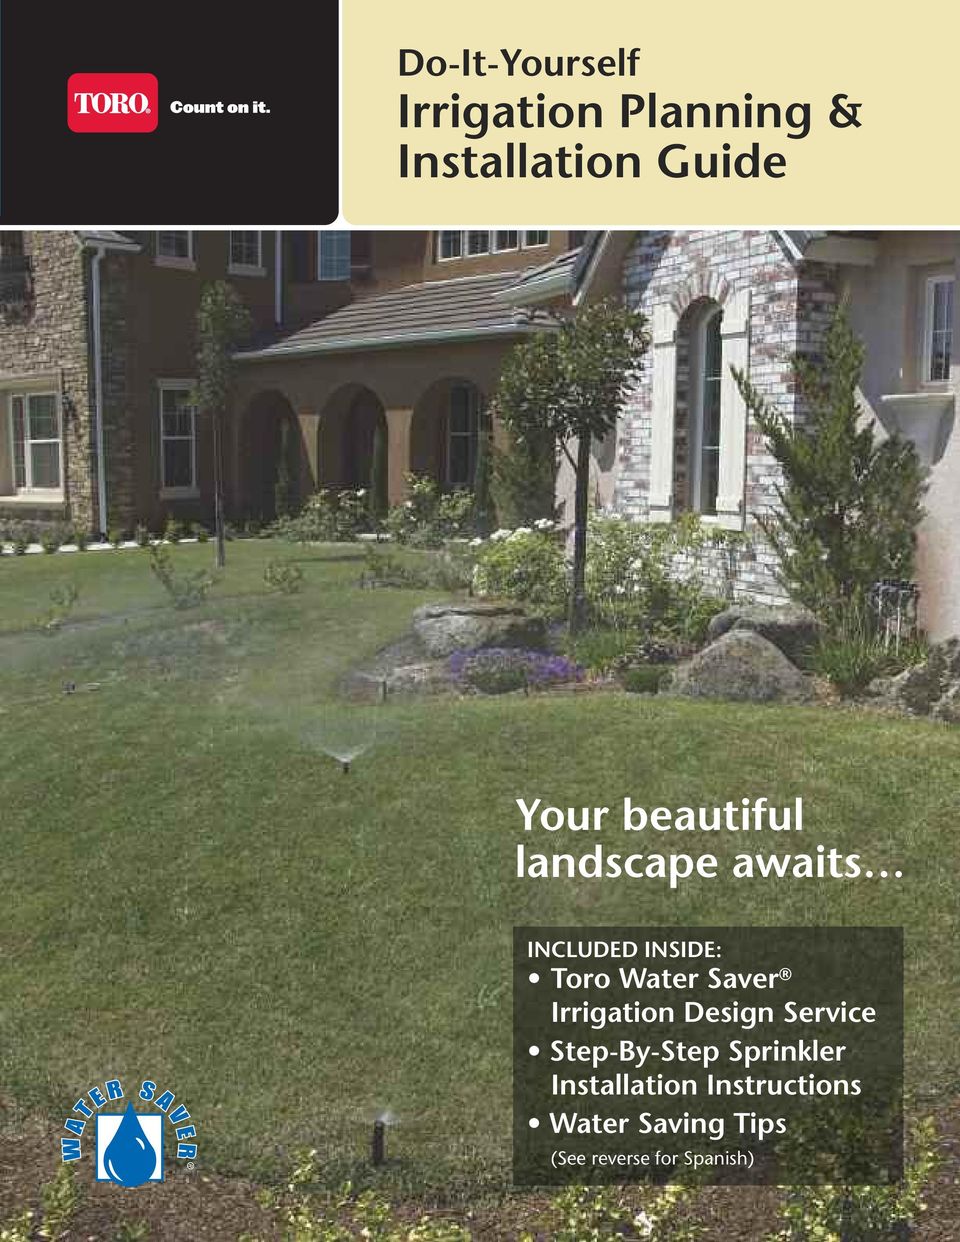 Saver Irrigation Design Service Step-By-Step Sprinkler